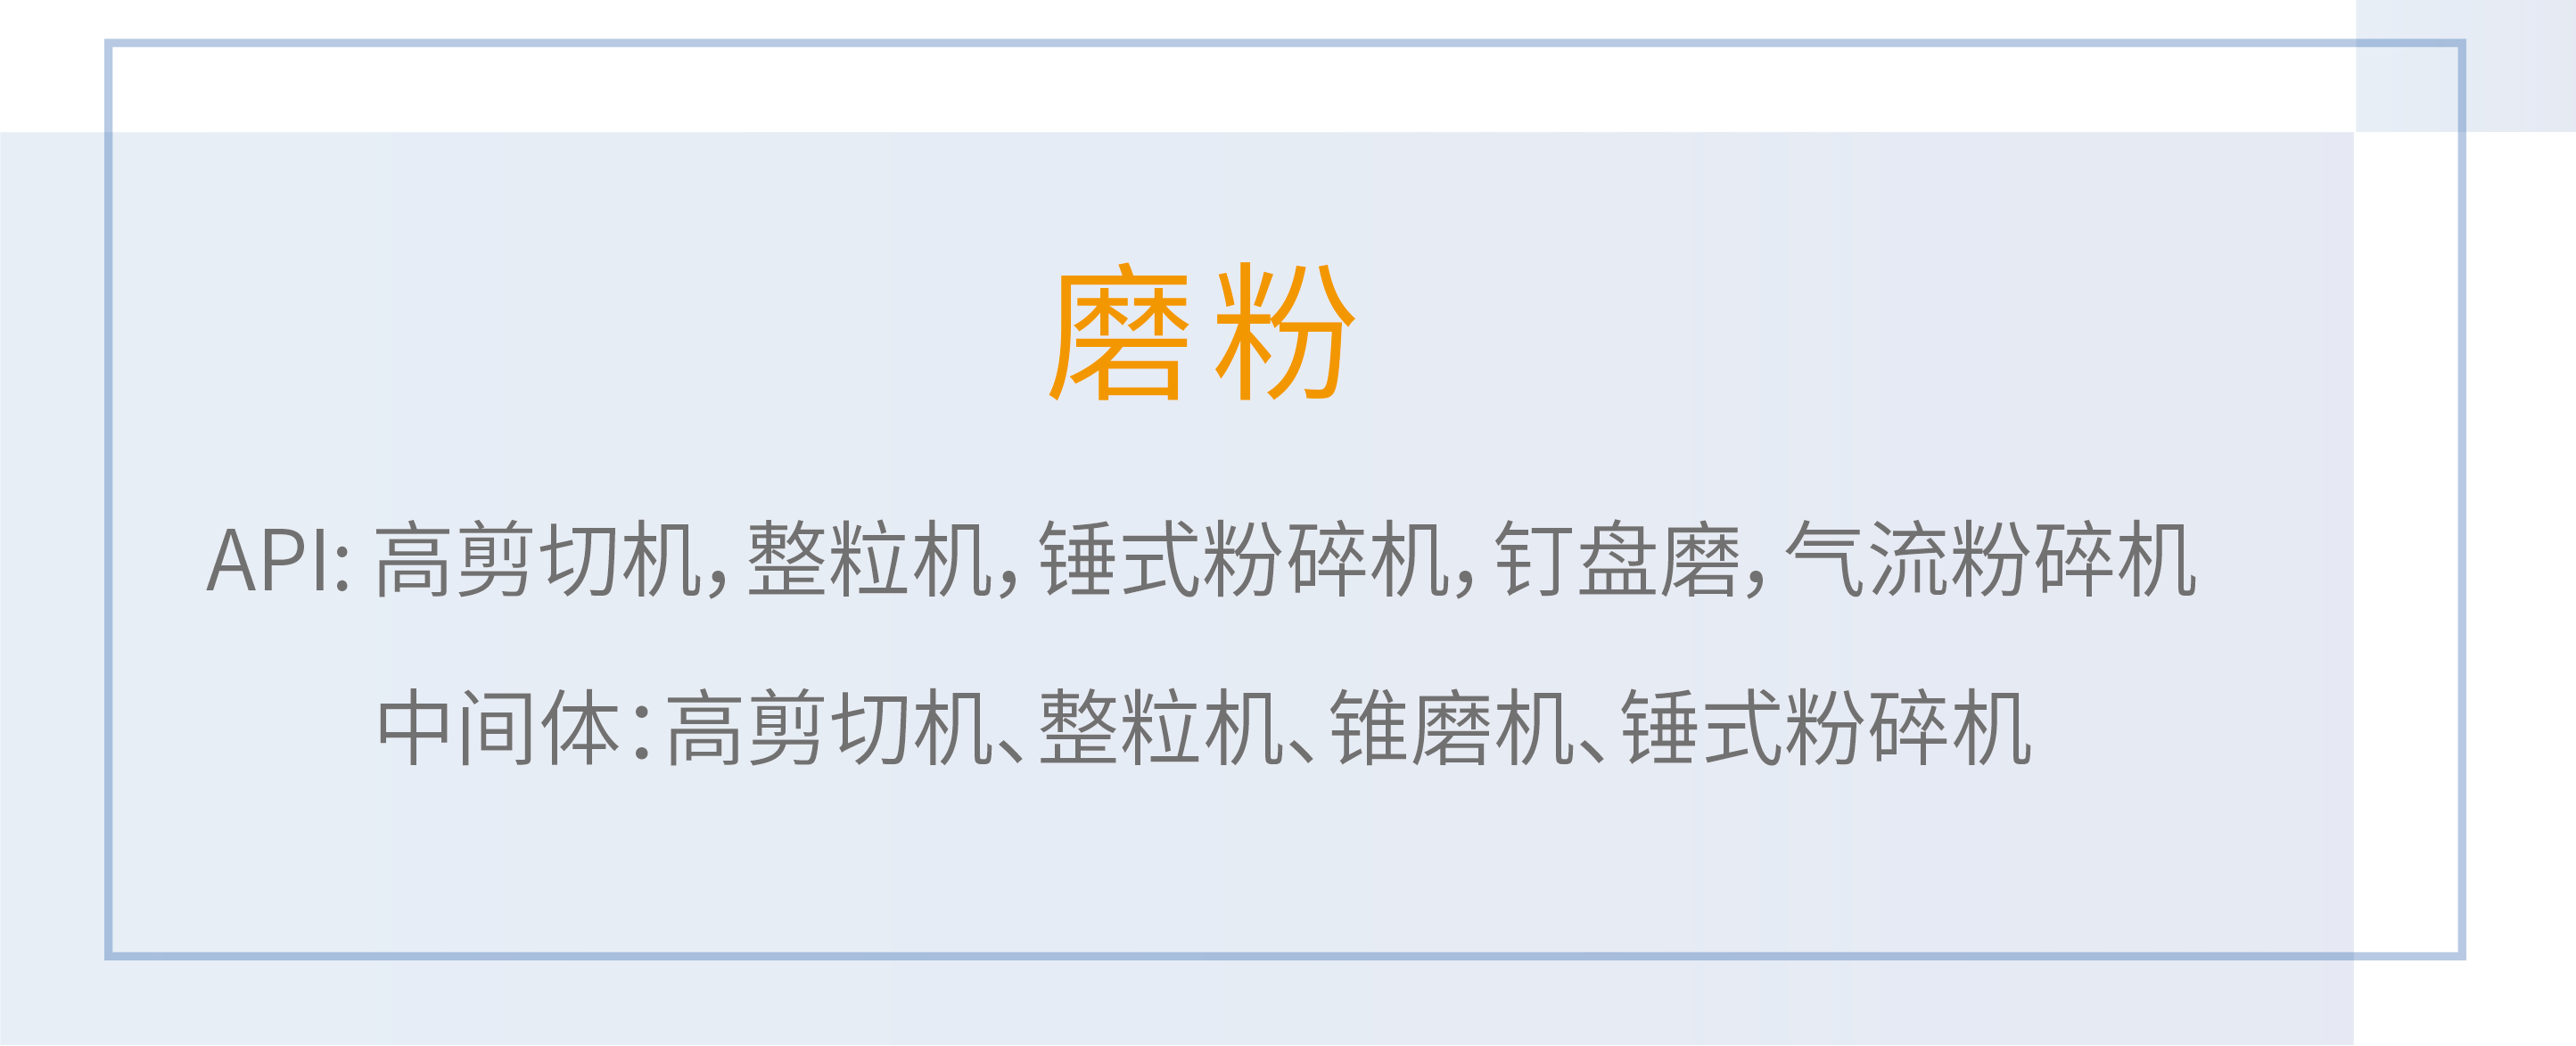 OB欧宝(中国游)官方网站